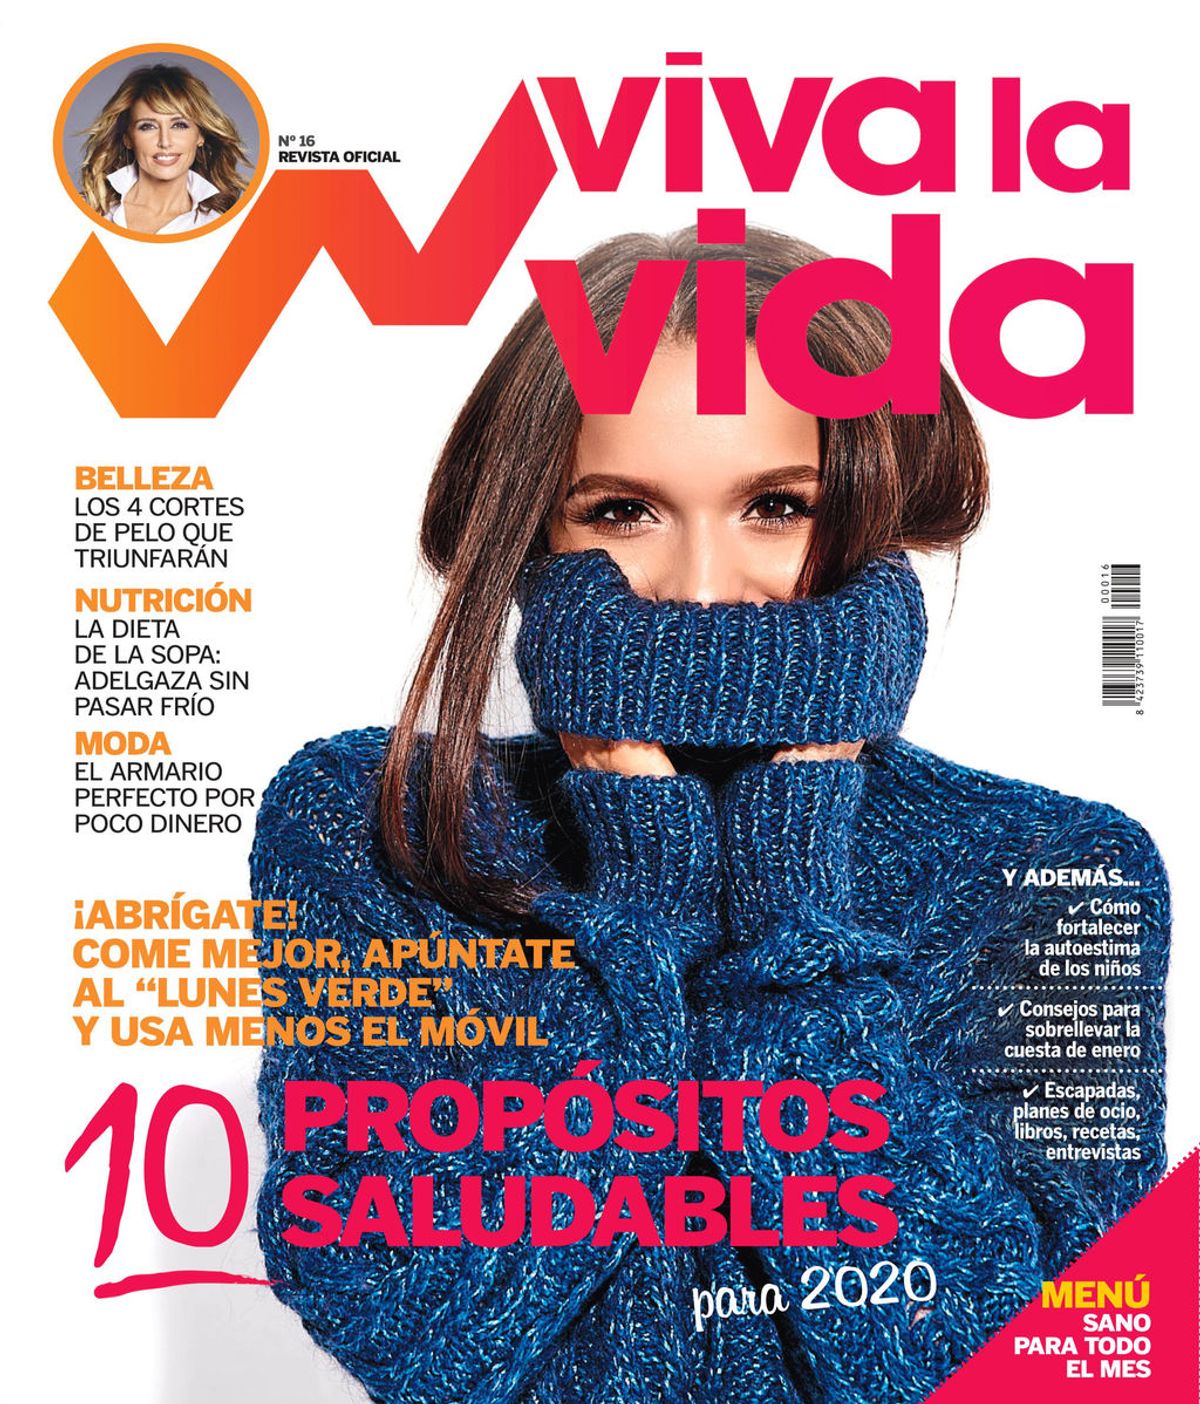 Empieza el año con buen pie con el nuevo número de la revista 'Viva la vida'